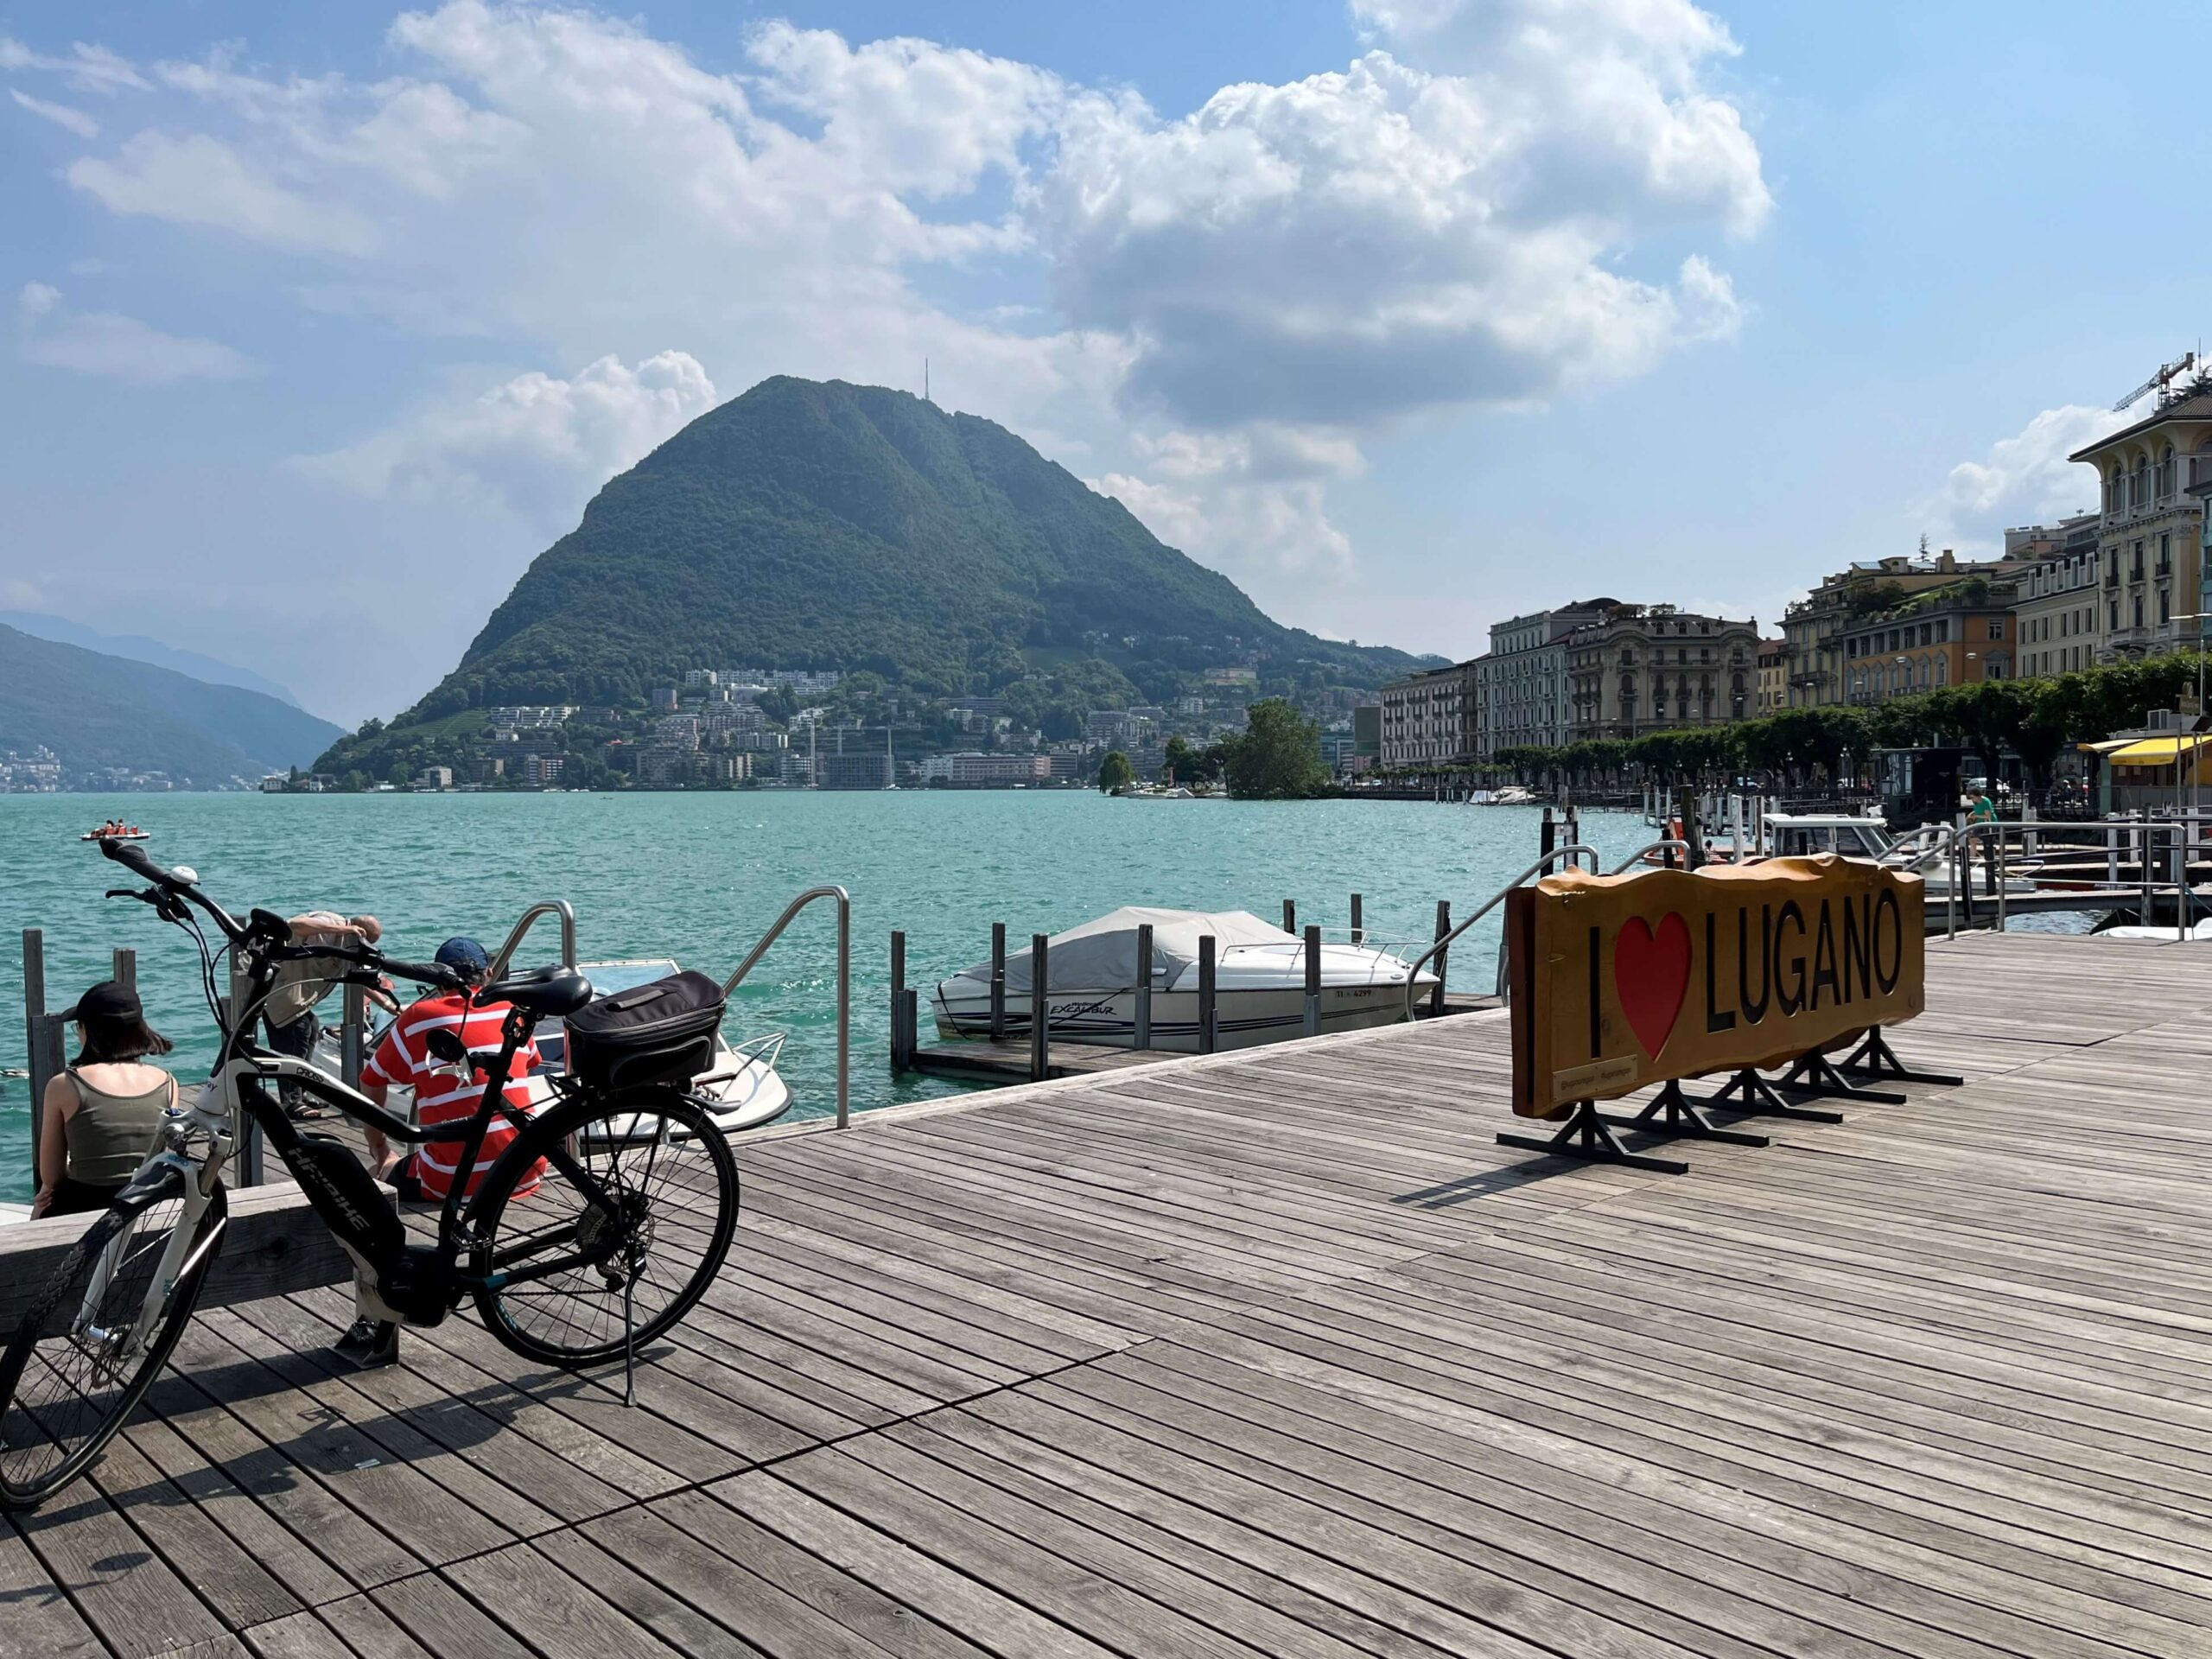 Cosa vedere a Lugano, il lungolago